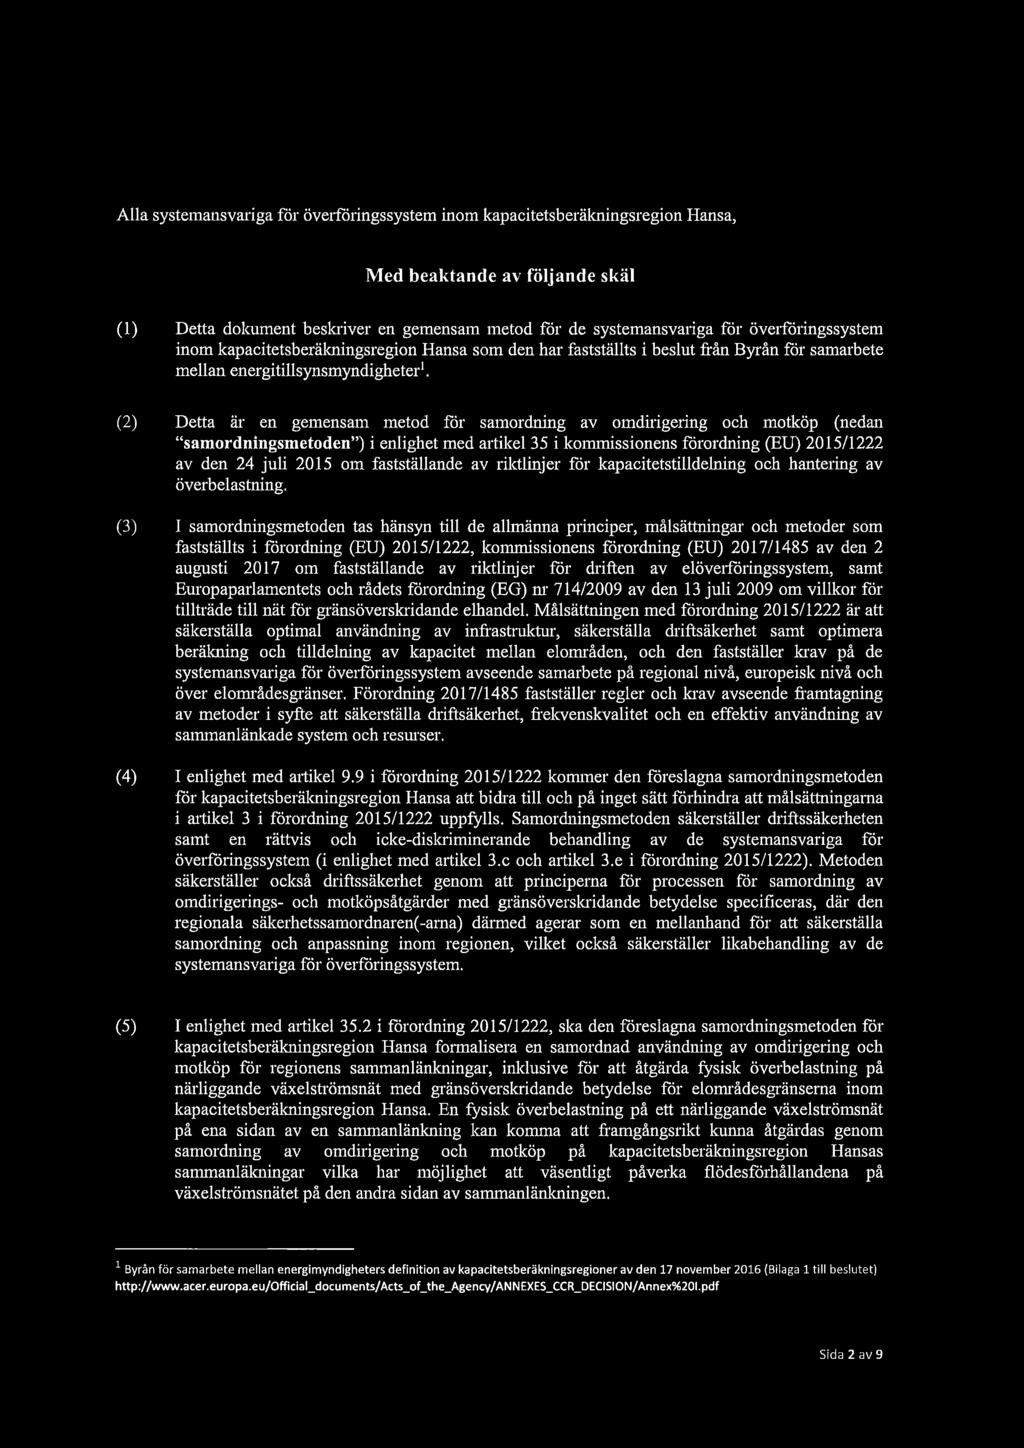 (2) Detta är en gemensam metod för samordning av omdirigering och motköp (nedan "samordningsmetoden") i enlighet med artikel 35 i kommissionens förordning (EU) 2015/1222 av den 24 juli 2015 om